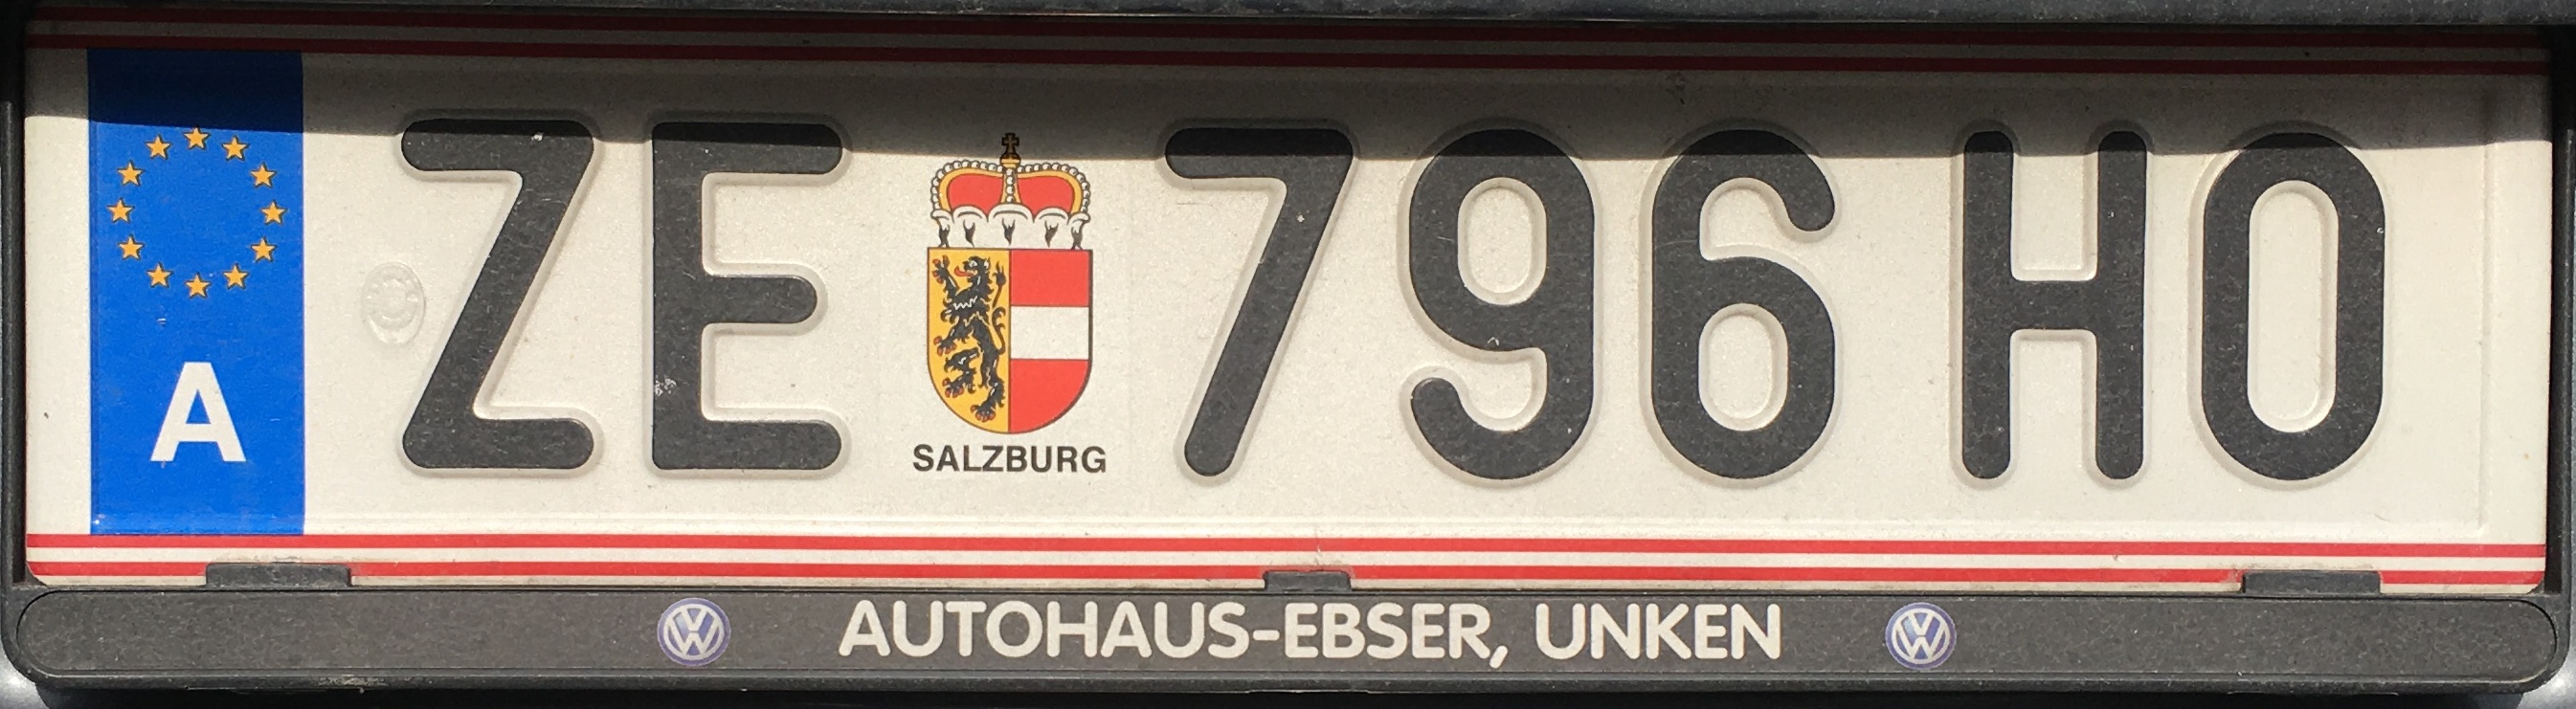 Registrační značka Rakousko - ZE - Zell am See, foto: vlastní